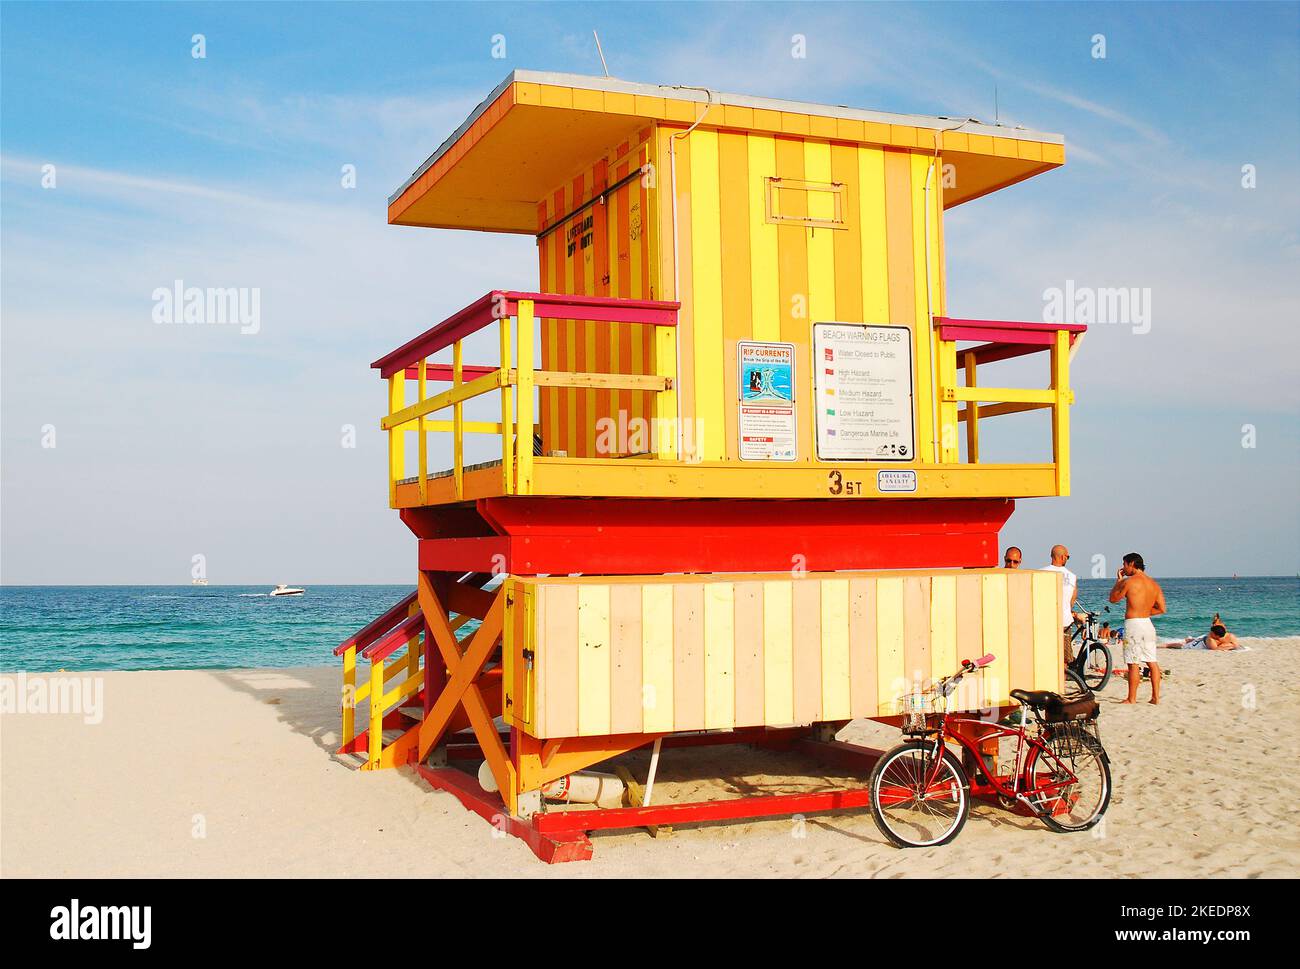 Third Street Lifeguard Station, à South Beach, Miami Beach, est l'un des nombreux stands de couleurs et de dessins différents le long de la côte de Floride Banque D'Images